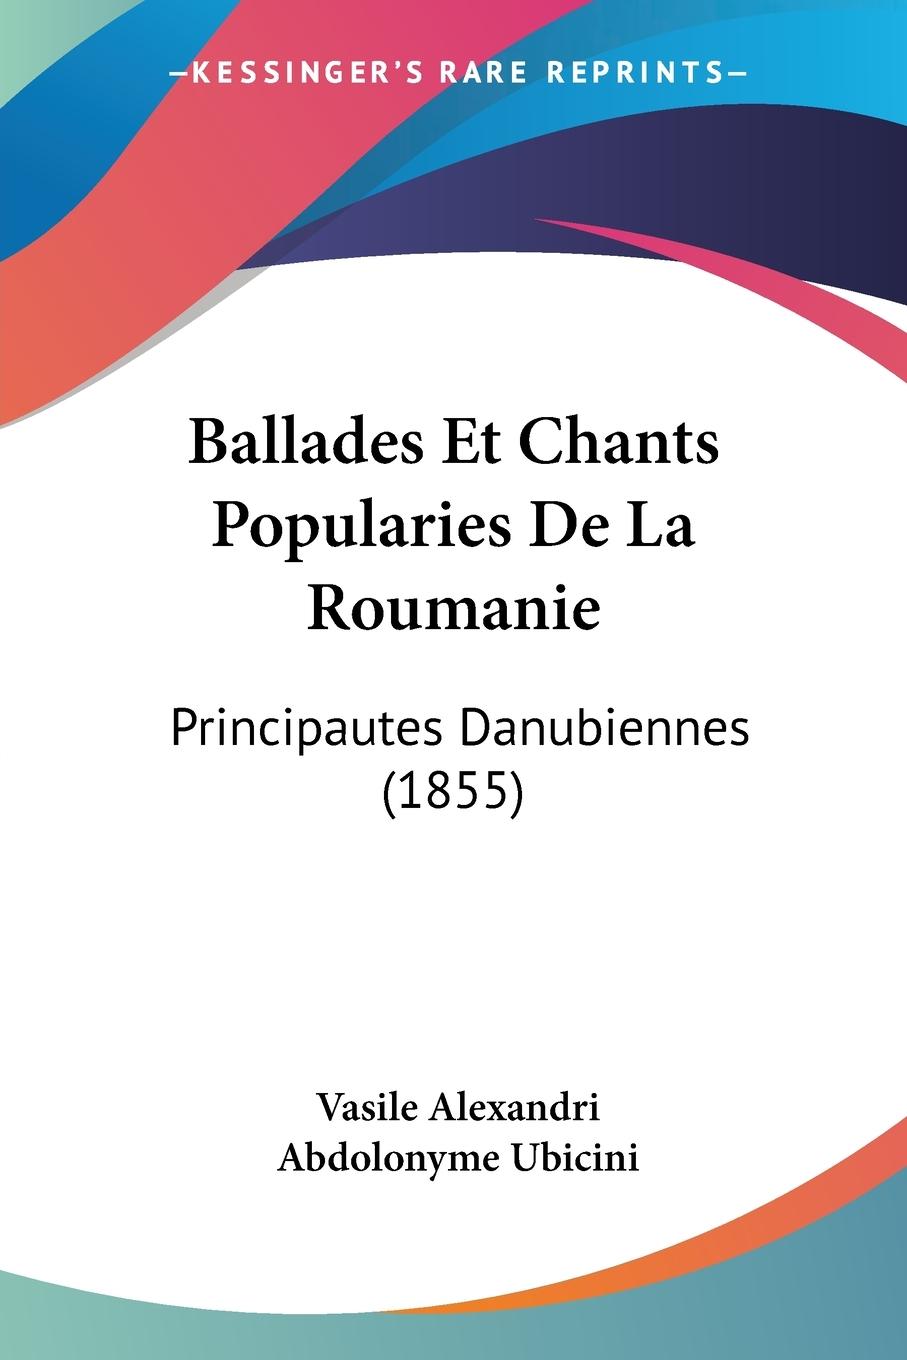 Ballades Et Chants Popularies De La Roumanie